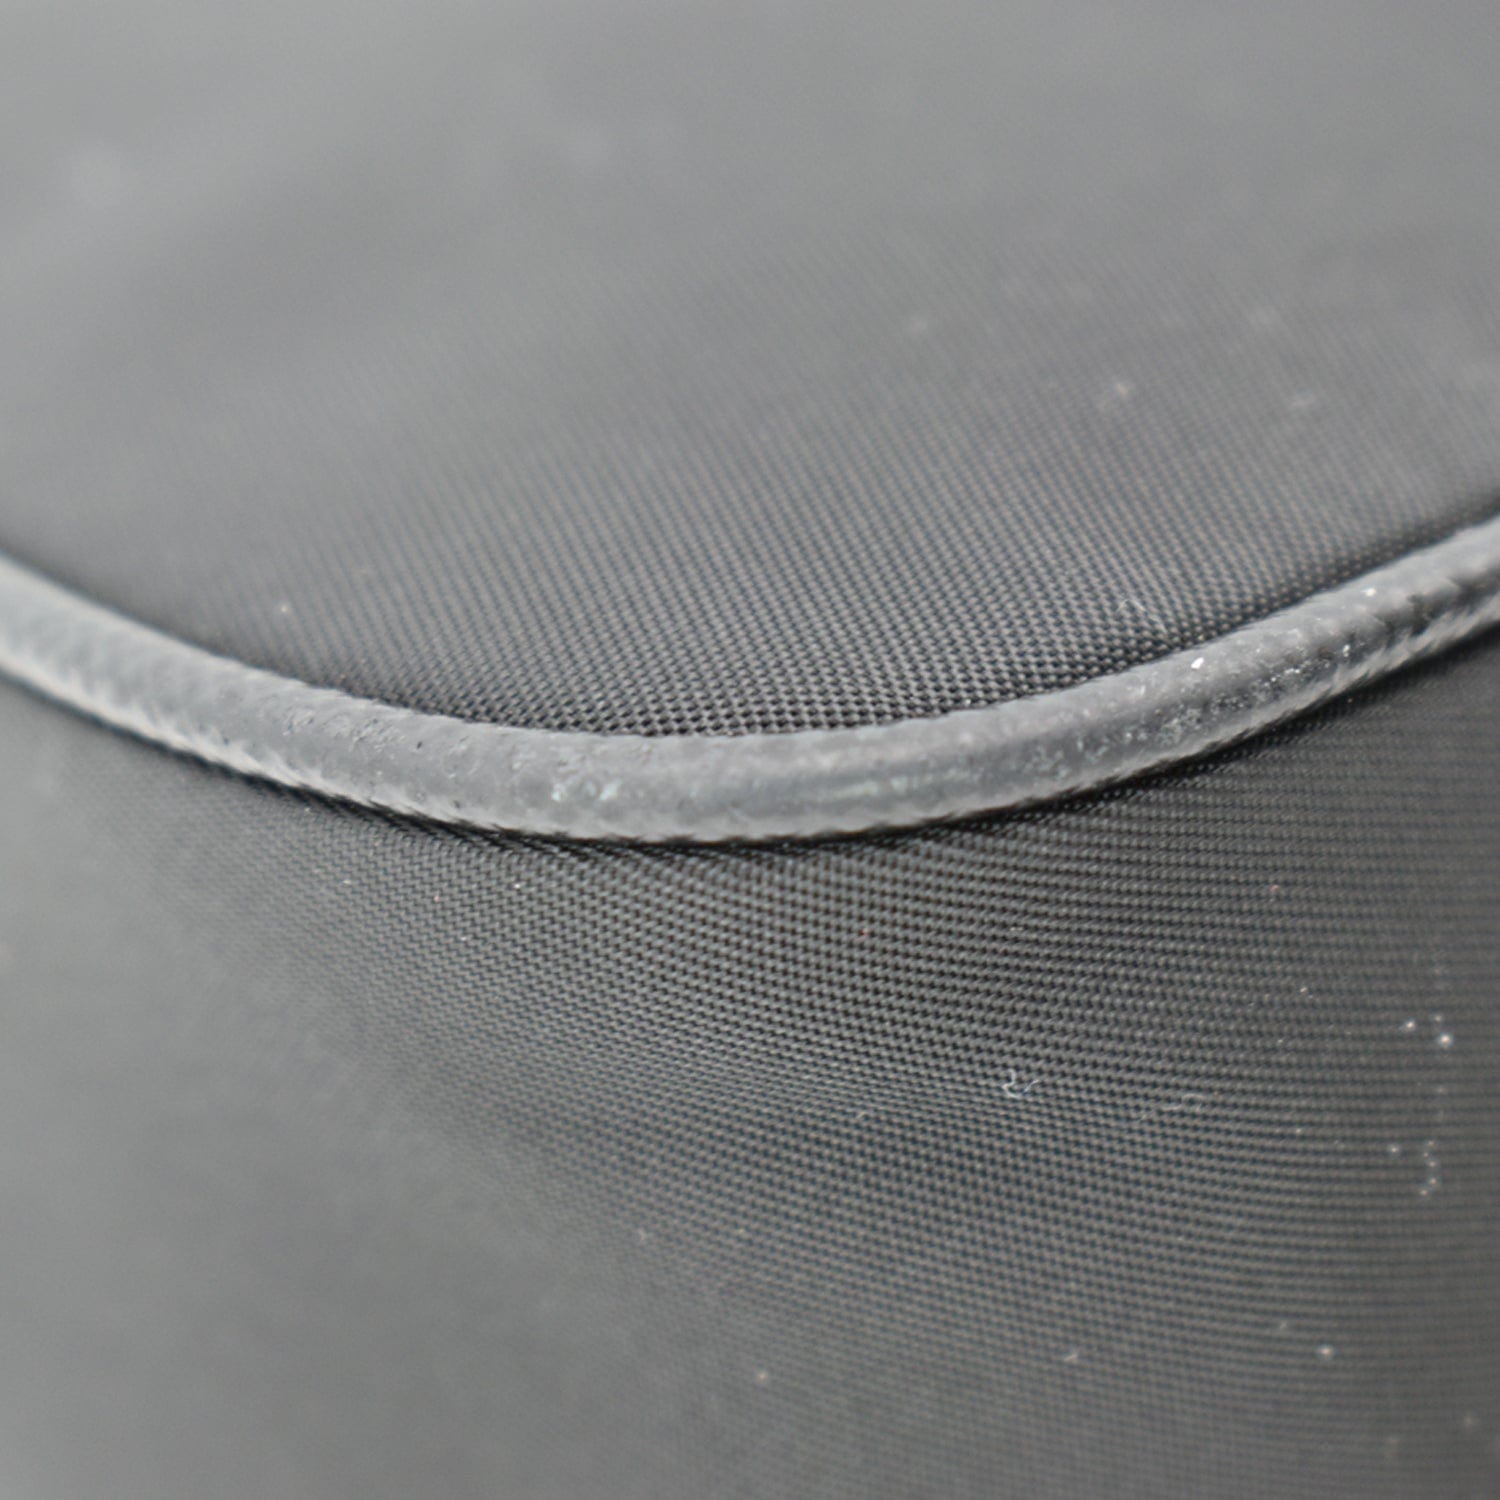 PRADA Nylon Sequin Embellished Polka Dot Re-Edition 2005 Shoulder Bag Black  1290047